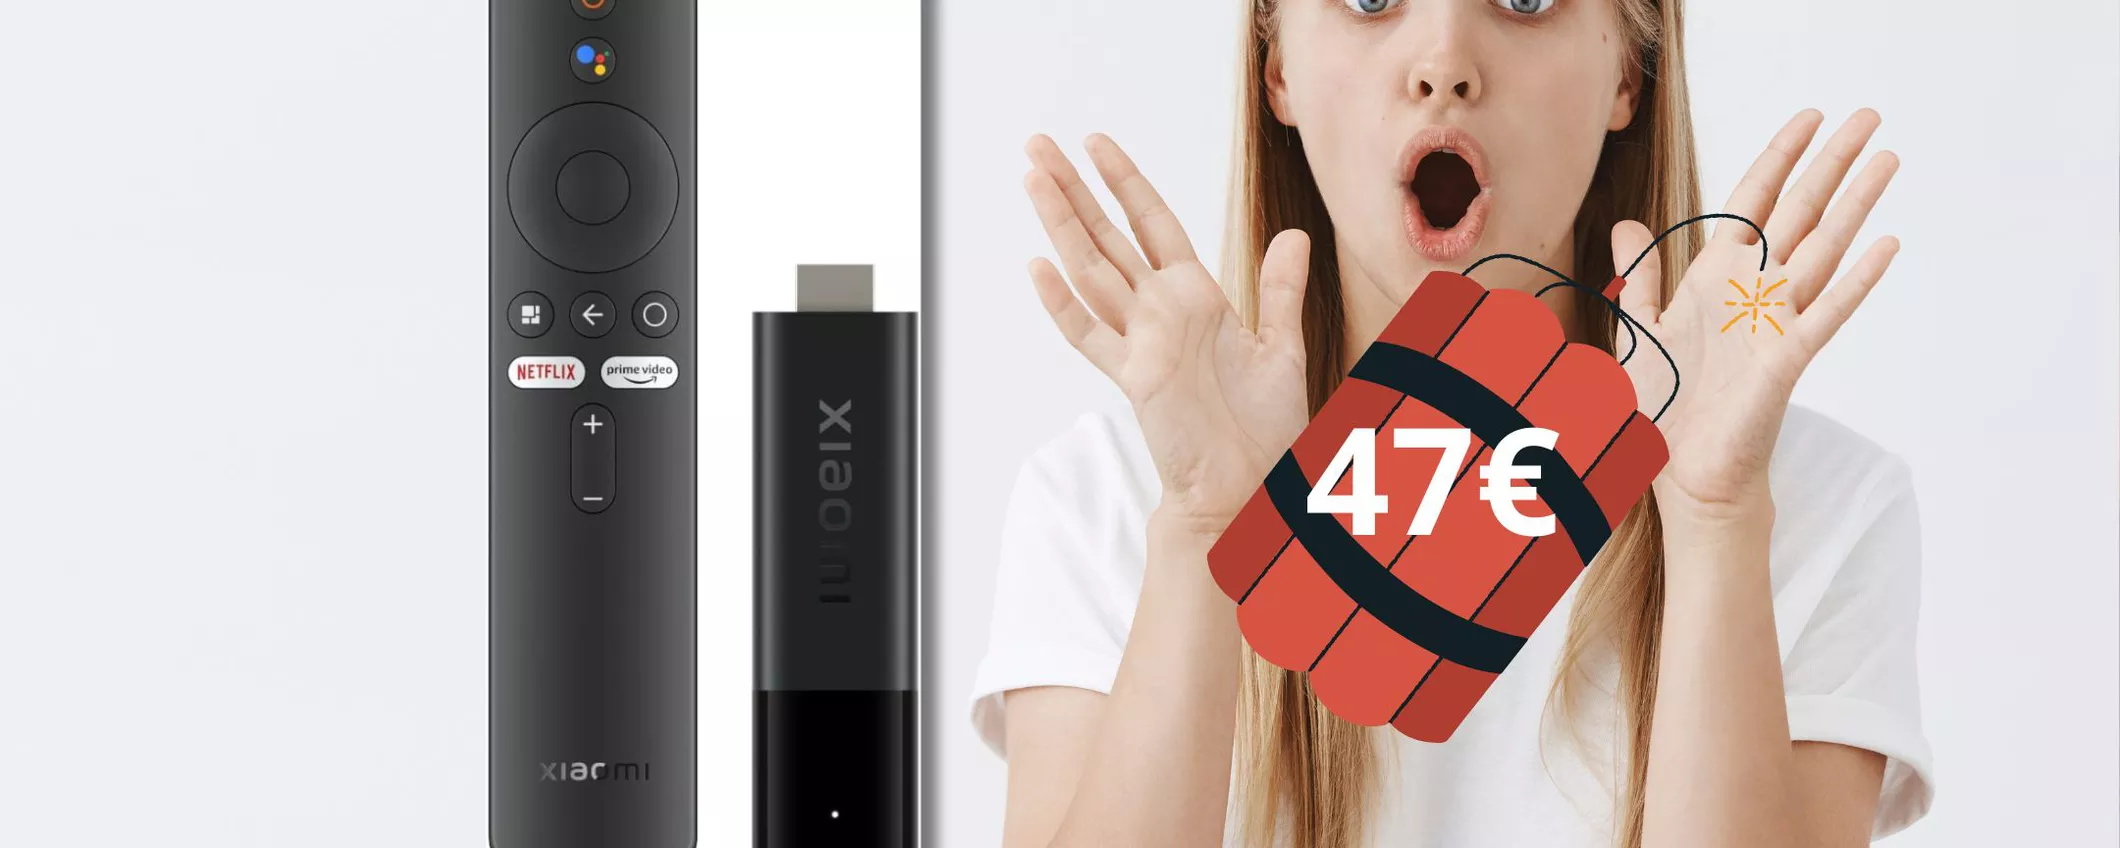 Trasforma il tuo televisore in una smart tv con questa Tv stick Xiaomi in OFFERTA!